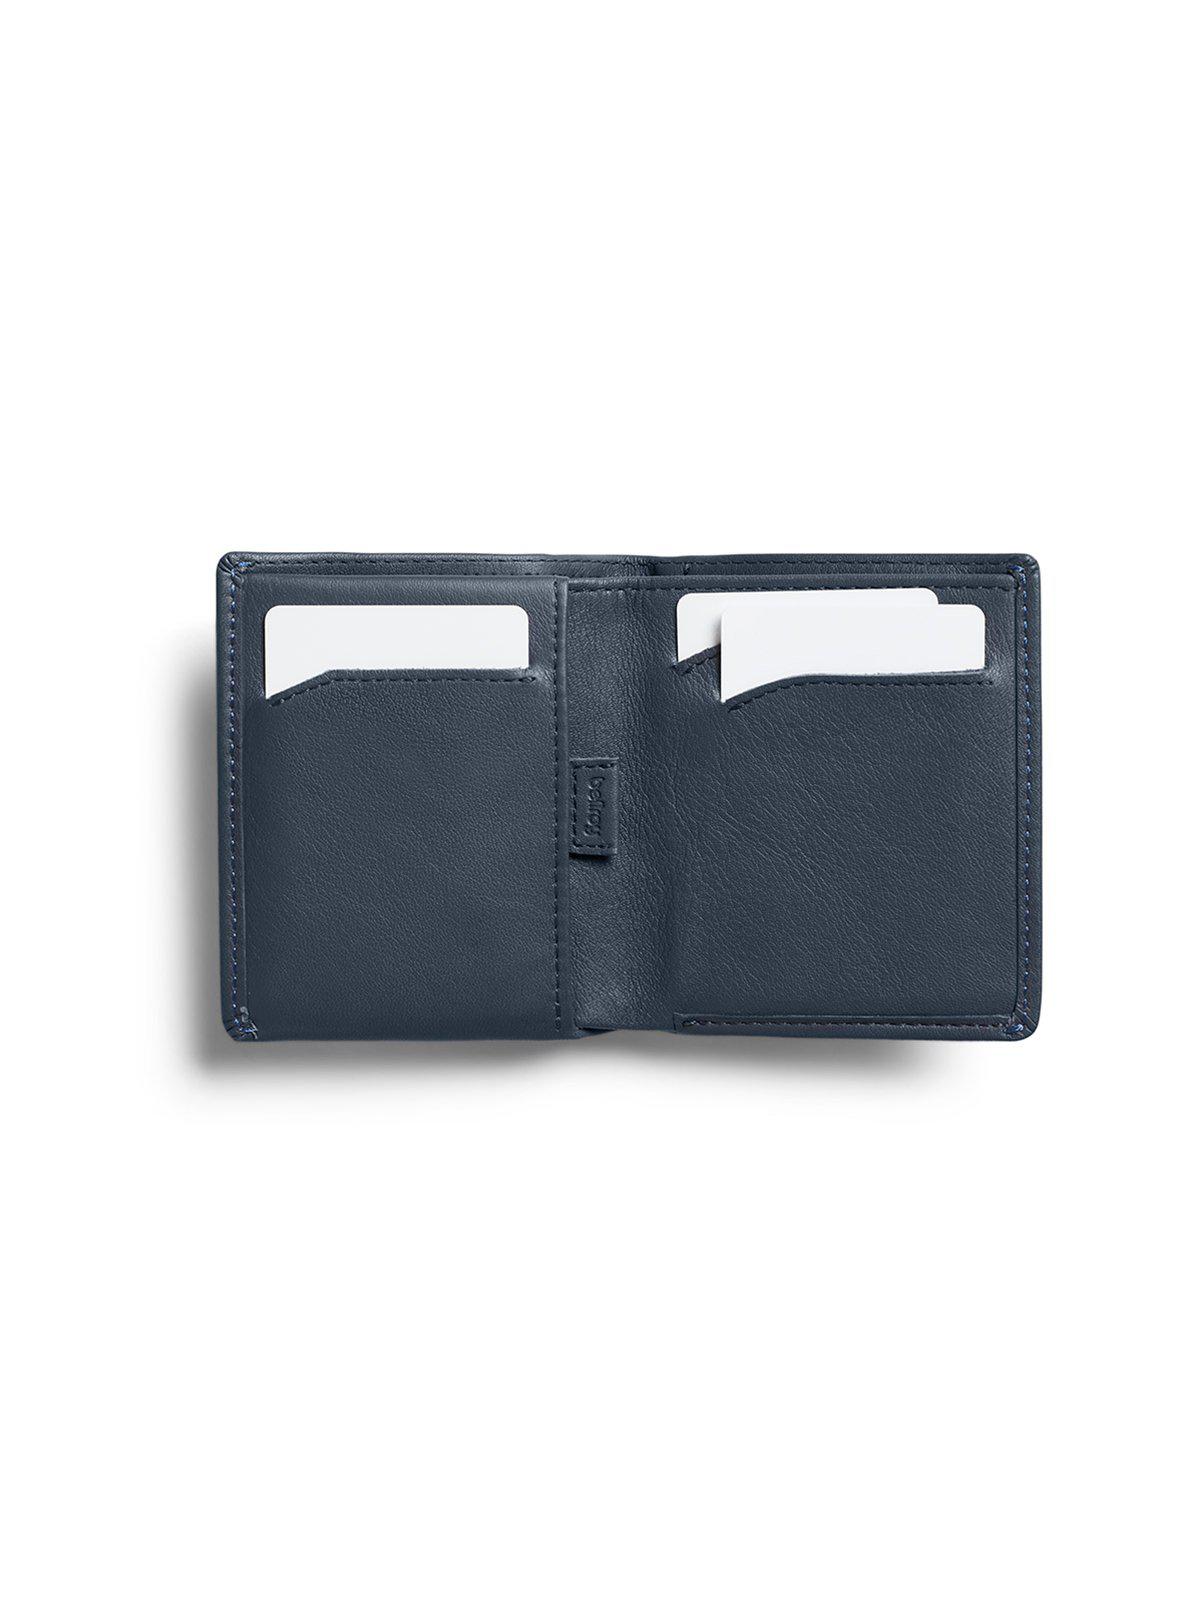 Bellroy Note Sleeve Wallet Basalt RFID